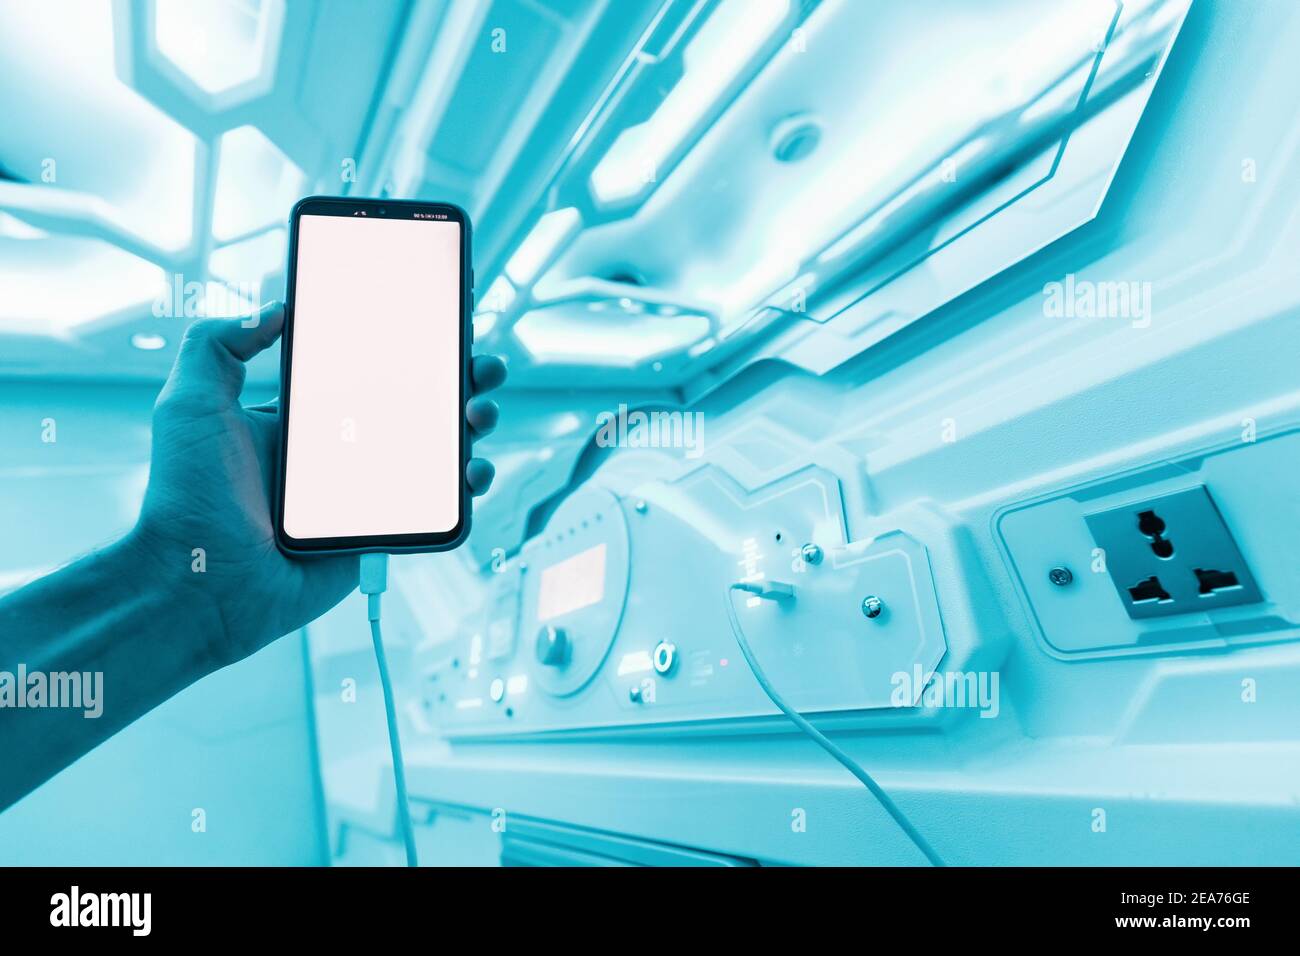 L'uomo riposa in un albergo a capsule e legge le notizie sui social network prima di andare a letto. Interni della navicella spaziale sci-fi in colori neon e UV Foto Stock